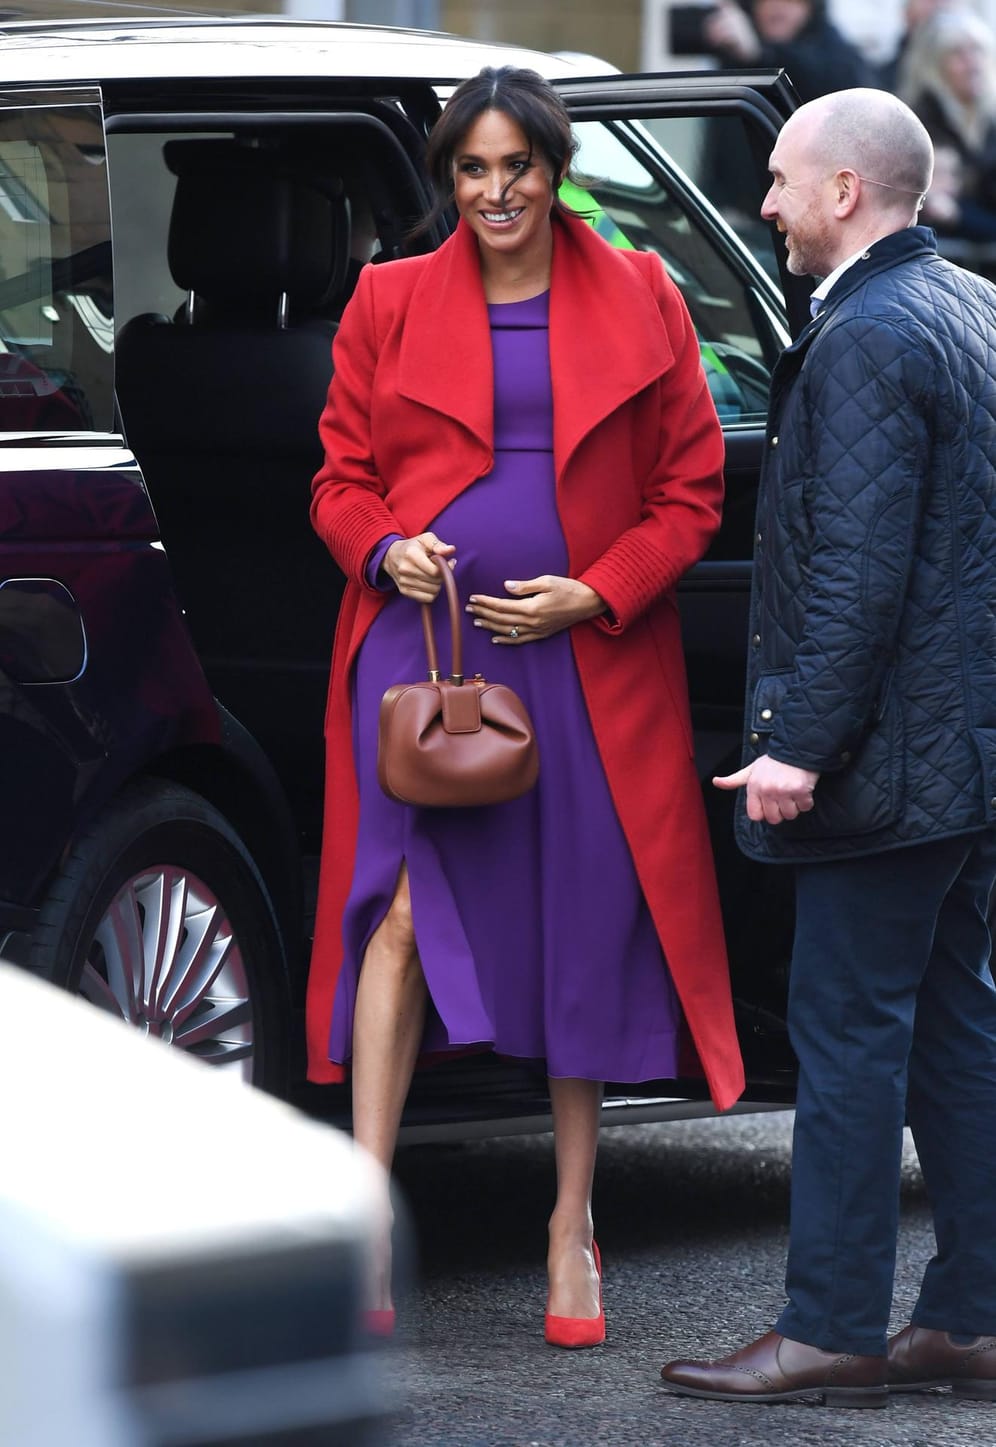 14. Januar 2019: Herzogin Meghan besucht mit Prinz Harry die Stadt Birkenhead nahe Liverpool. Ihren Babybauch, der in einem Kleid in knalligem Lila steckt, berührt sie immer wieder liebevoll. Den Colourblocking-Look perfektioniert sie durch einen Mantel in knalligem Rot.